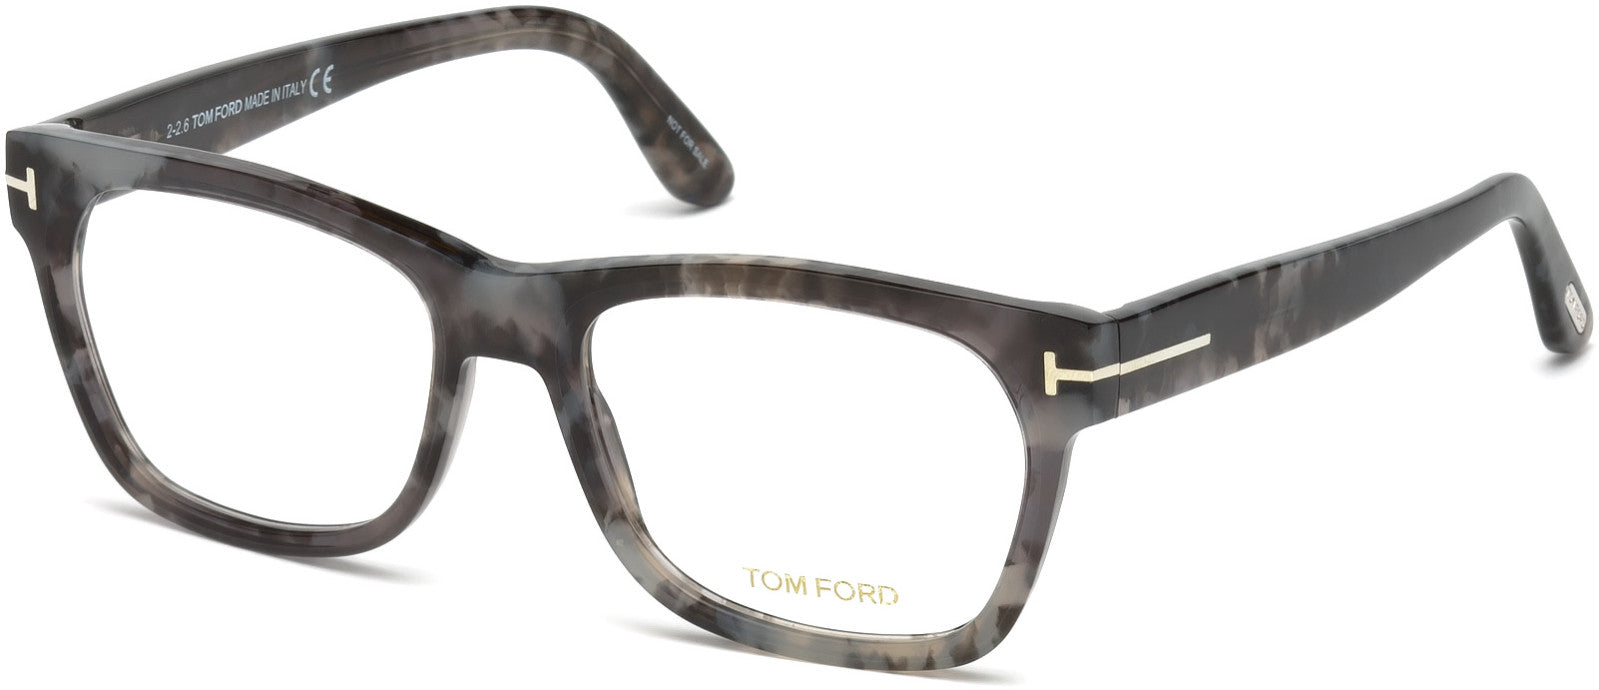 Tom Ford FT5468 Geometric Eyeglasses 056-056 - Shiny Grey Havana, Shiny Palladium "t" Logo